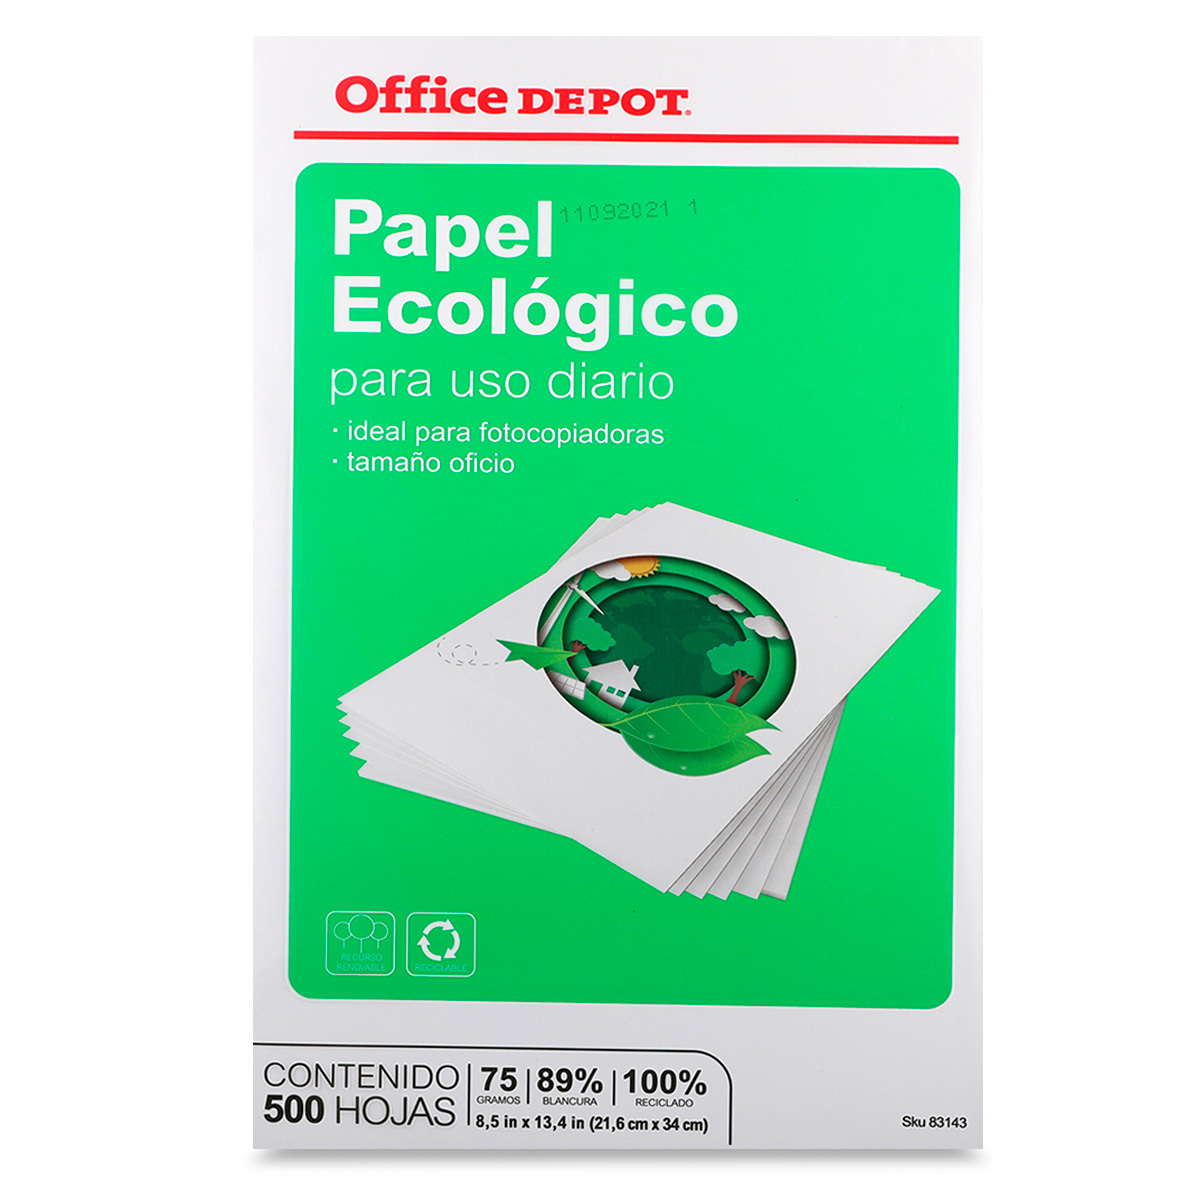 Papel Reciclado Oficio Office Depot Ecológico 500 hojas blancas Office Depot Mexico